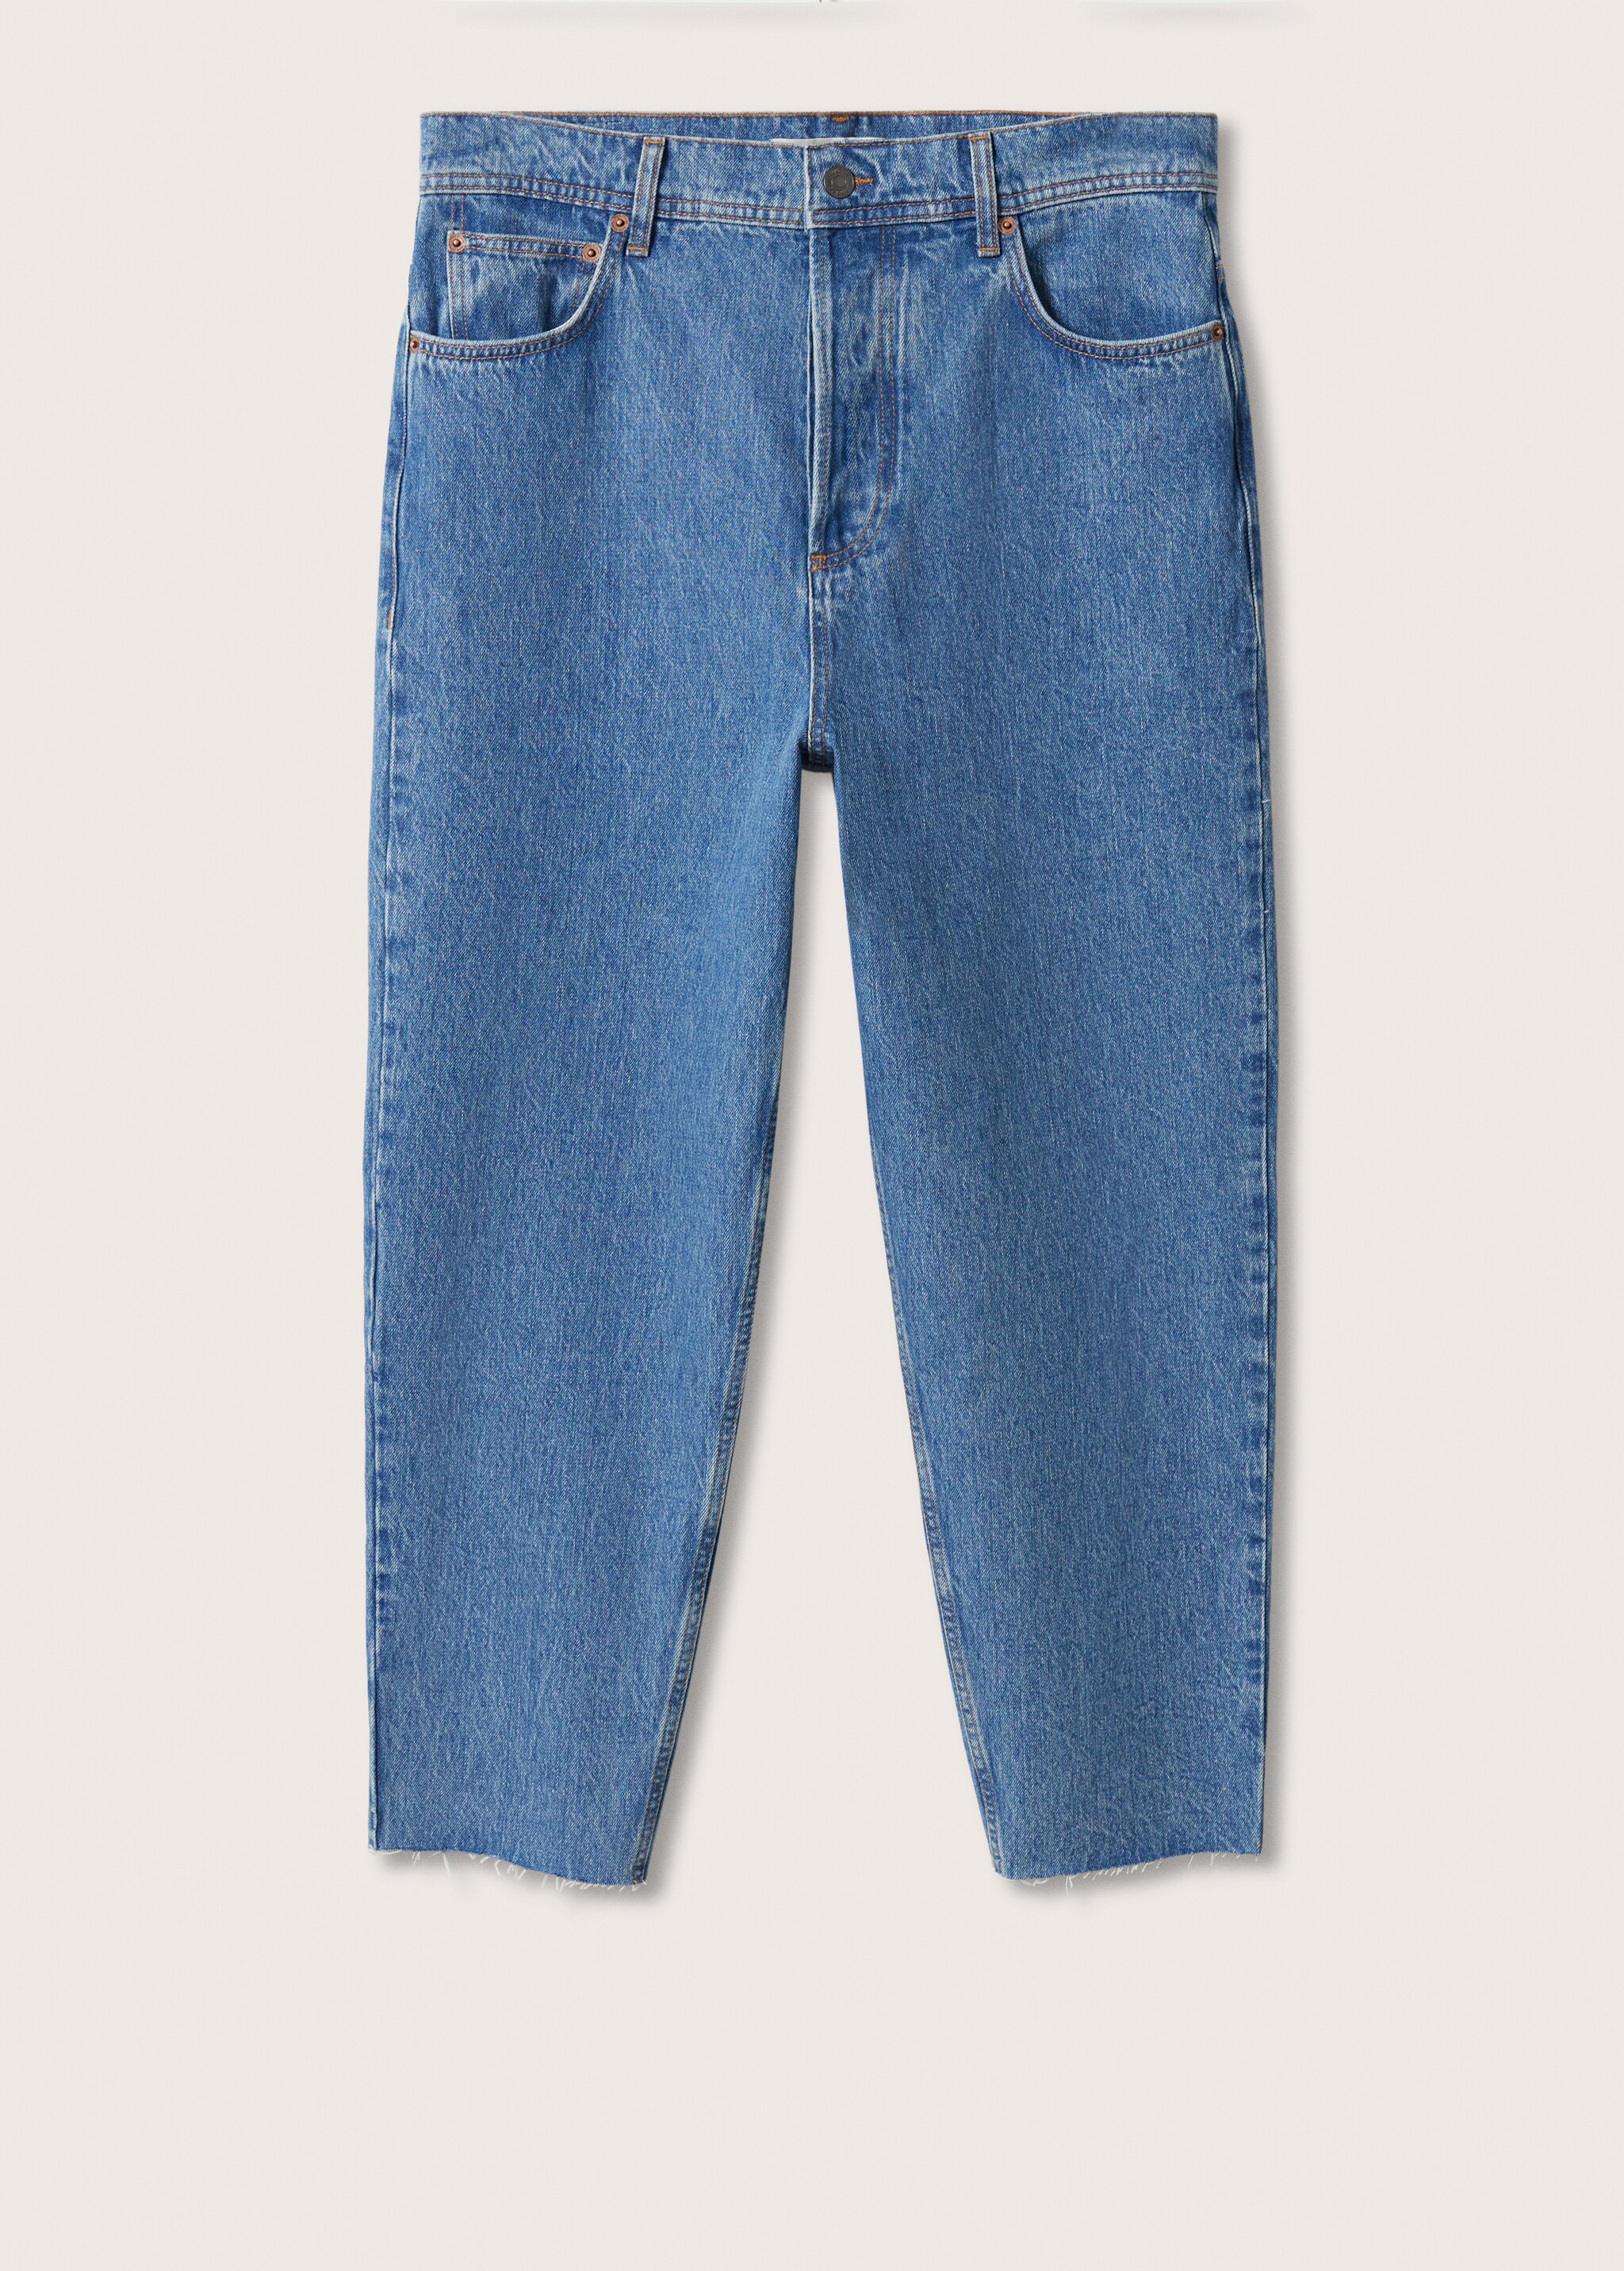 Jeans tapered loose cropped - Artikkel uten modell